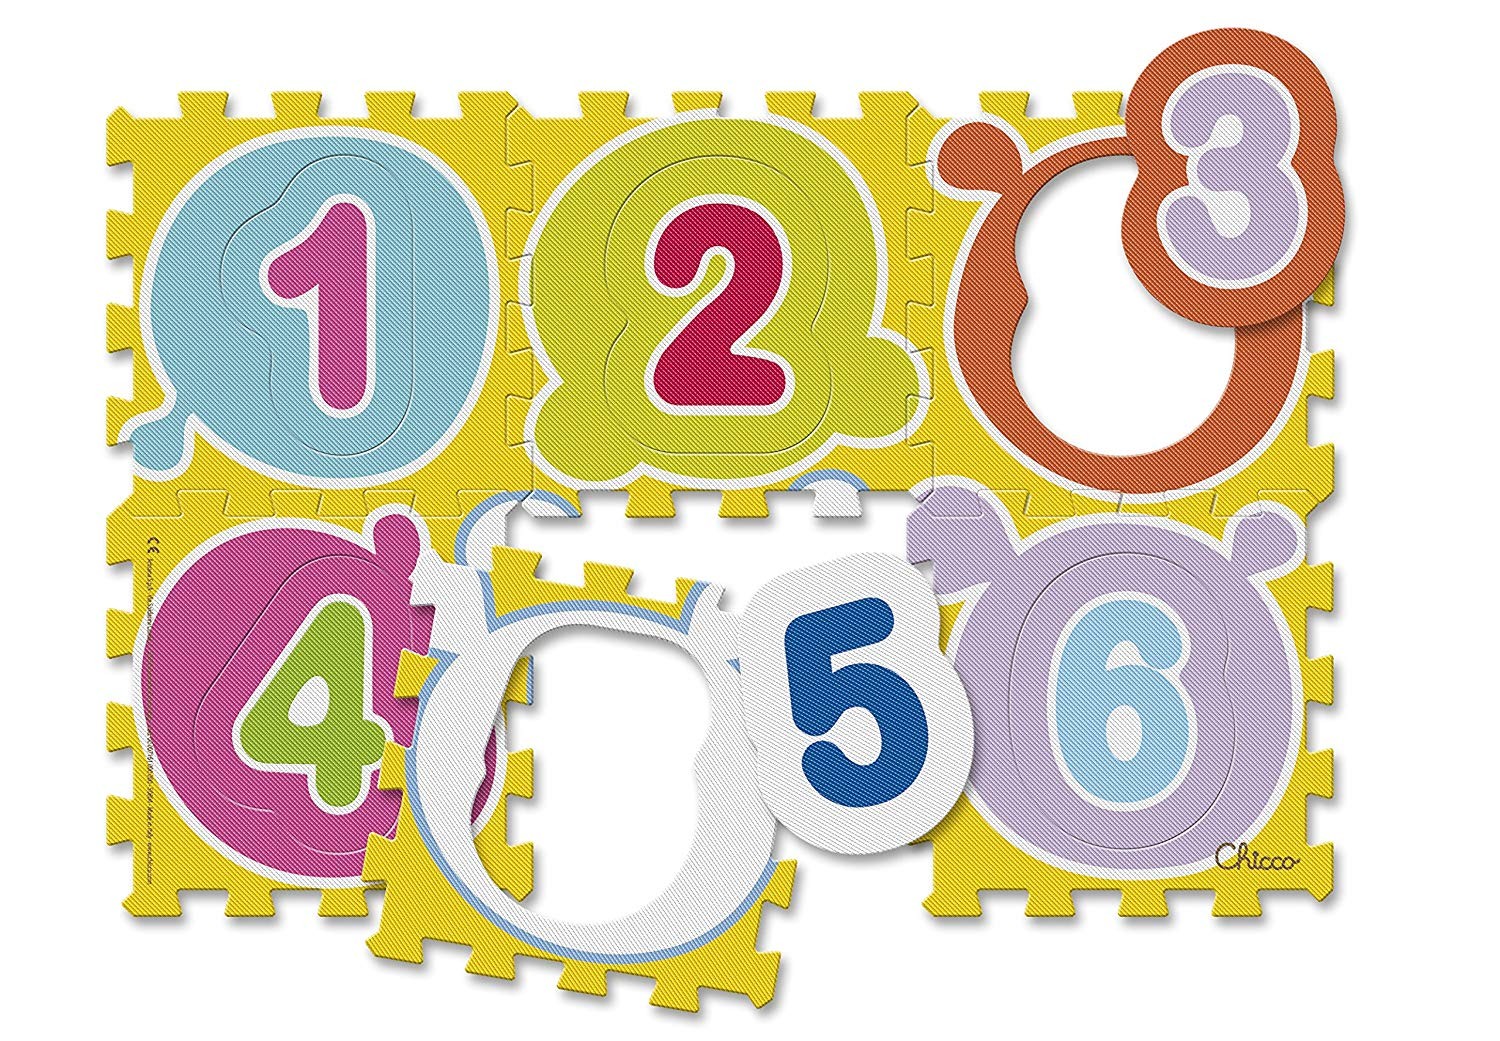 Tappeto Puzzle Numeri